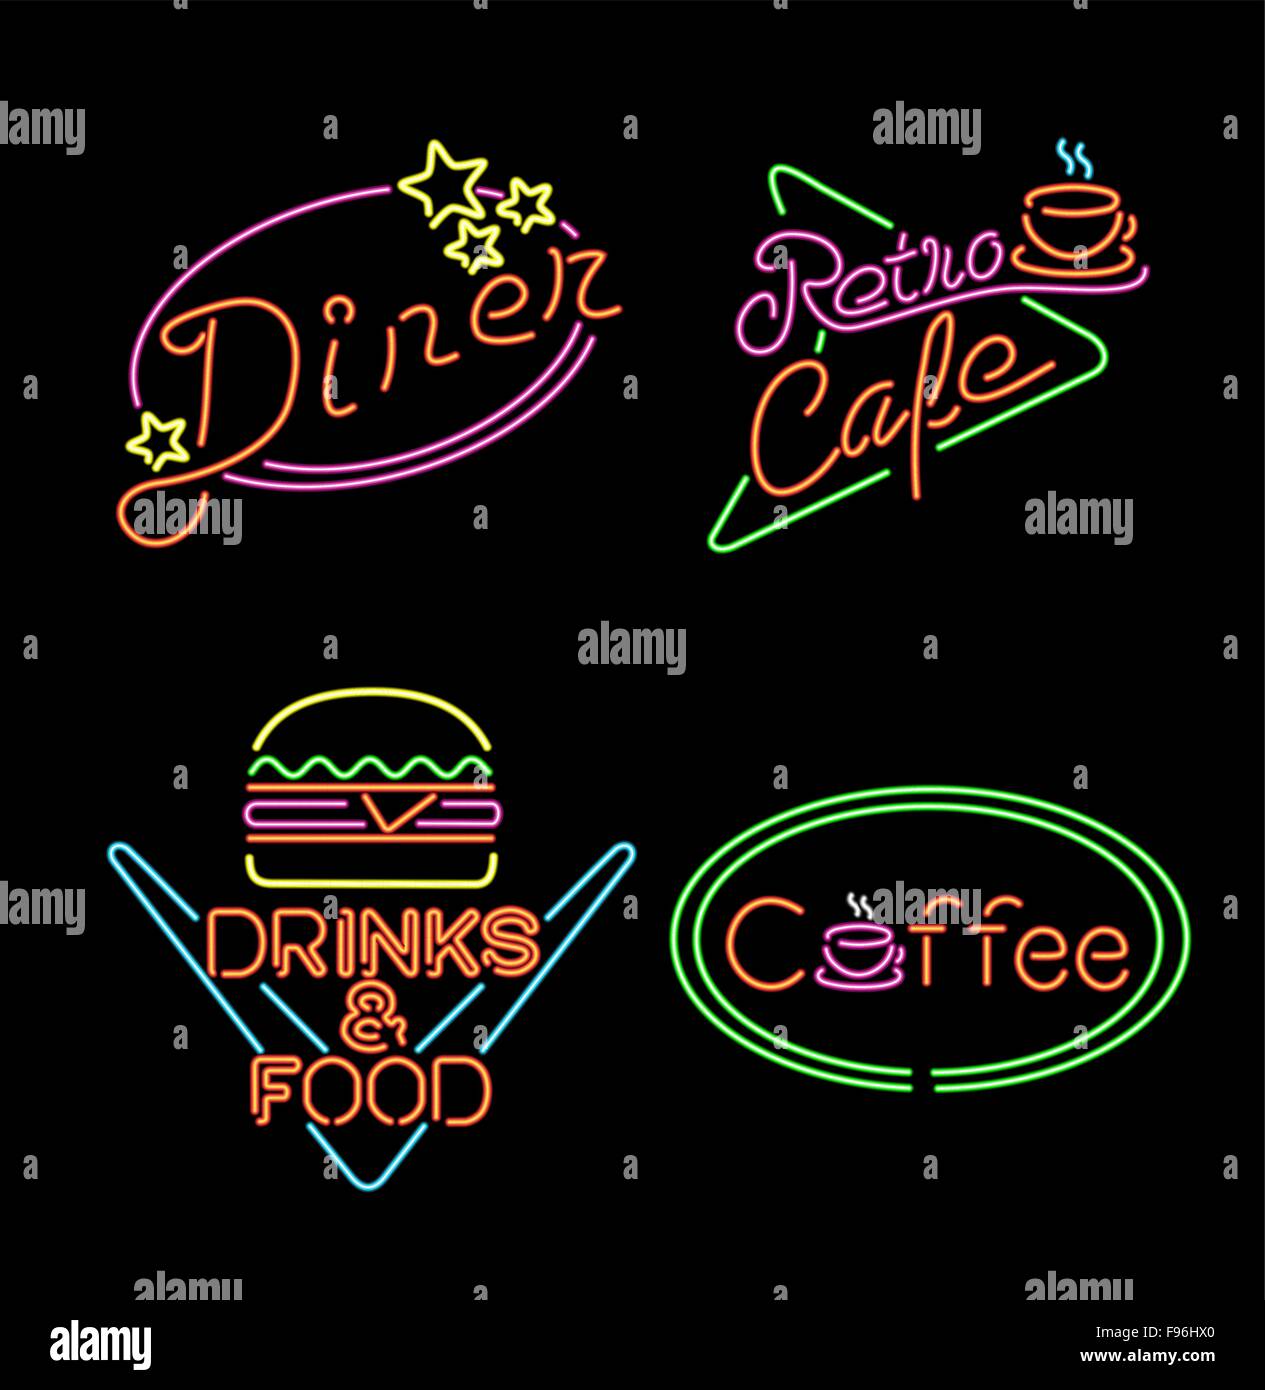 Jeu de lumière néon rétro vintage, signes et symboles pour les entreprises alimentaires, café, hamburger, restaurant, diner. Vecteur EPS10. Illustration de Vecteur